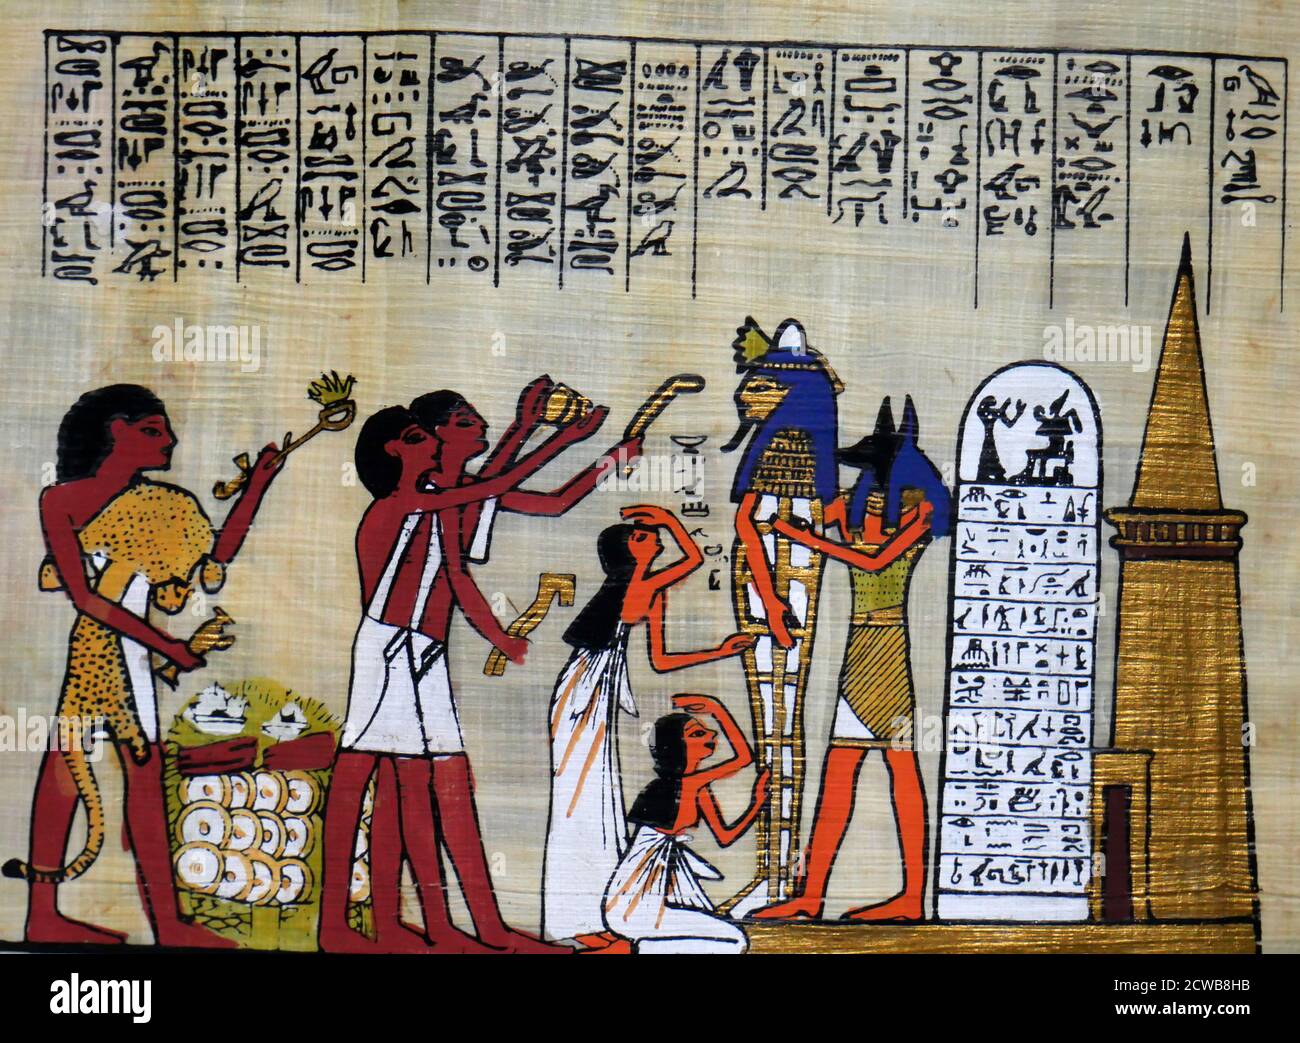 Papyrus contemporain représentant l'ancien rituel égyptien de momification pour un pharaon. Anubis tient le cercueil tandis que les préposés font des offrandes Banque D'Images